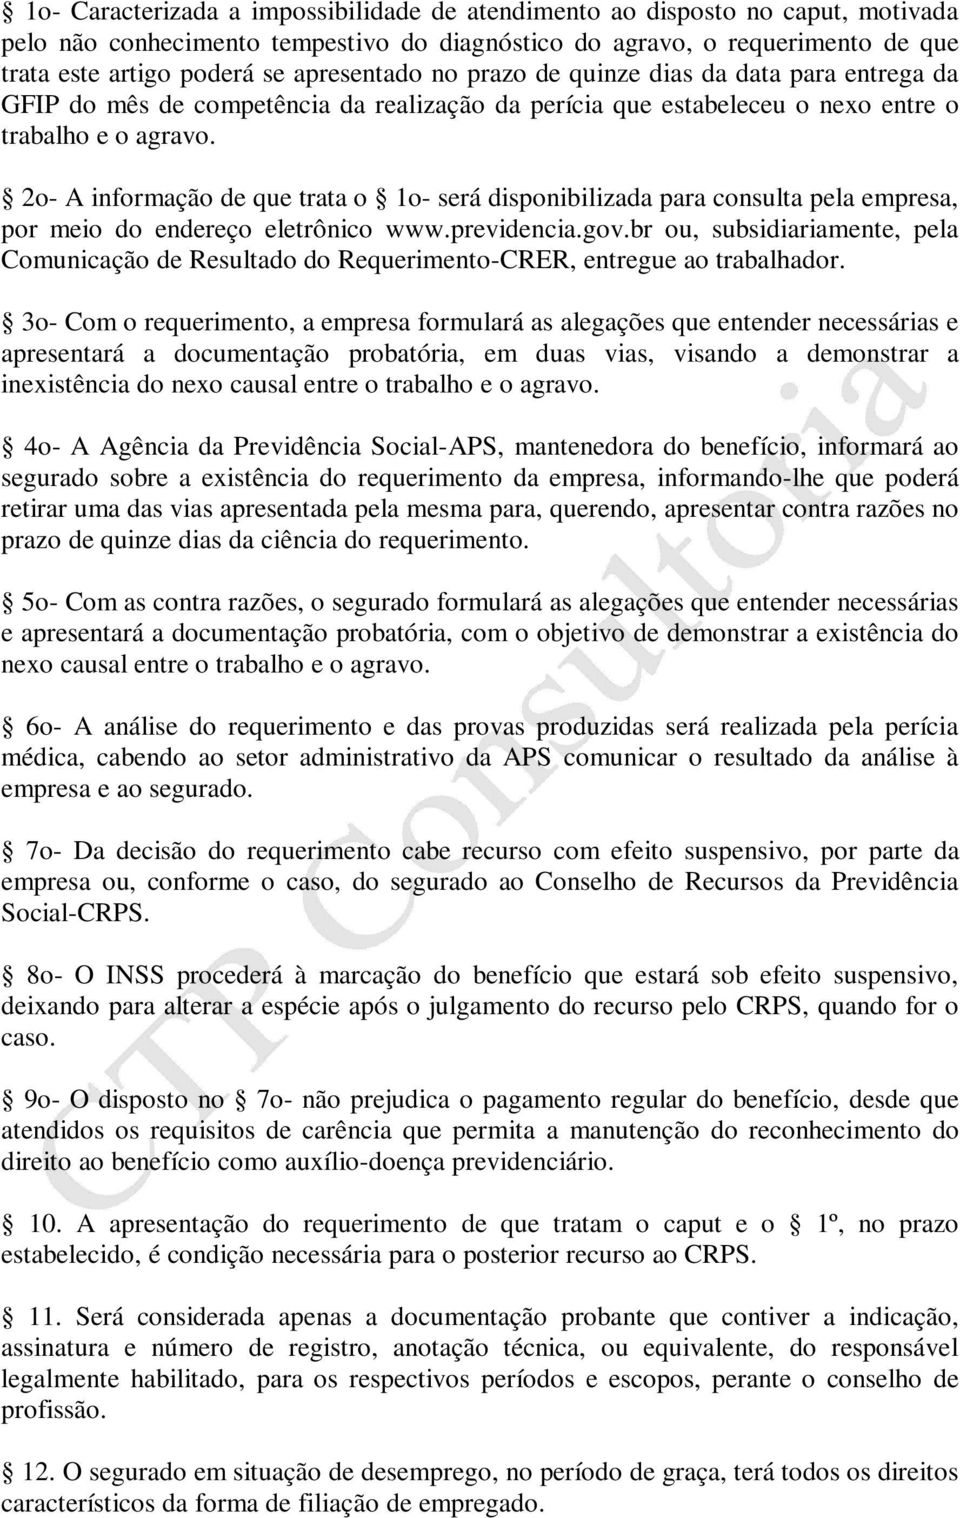 2o- A informação de que trata o 1o- será disponibilizada para consulta pela empresa, por meio do endereço eletrônico www.previdencia.gov.